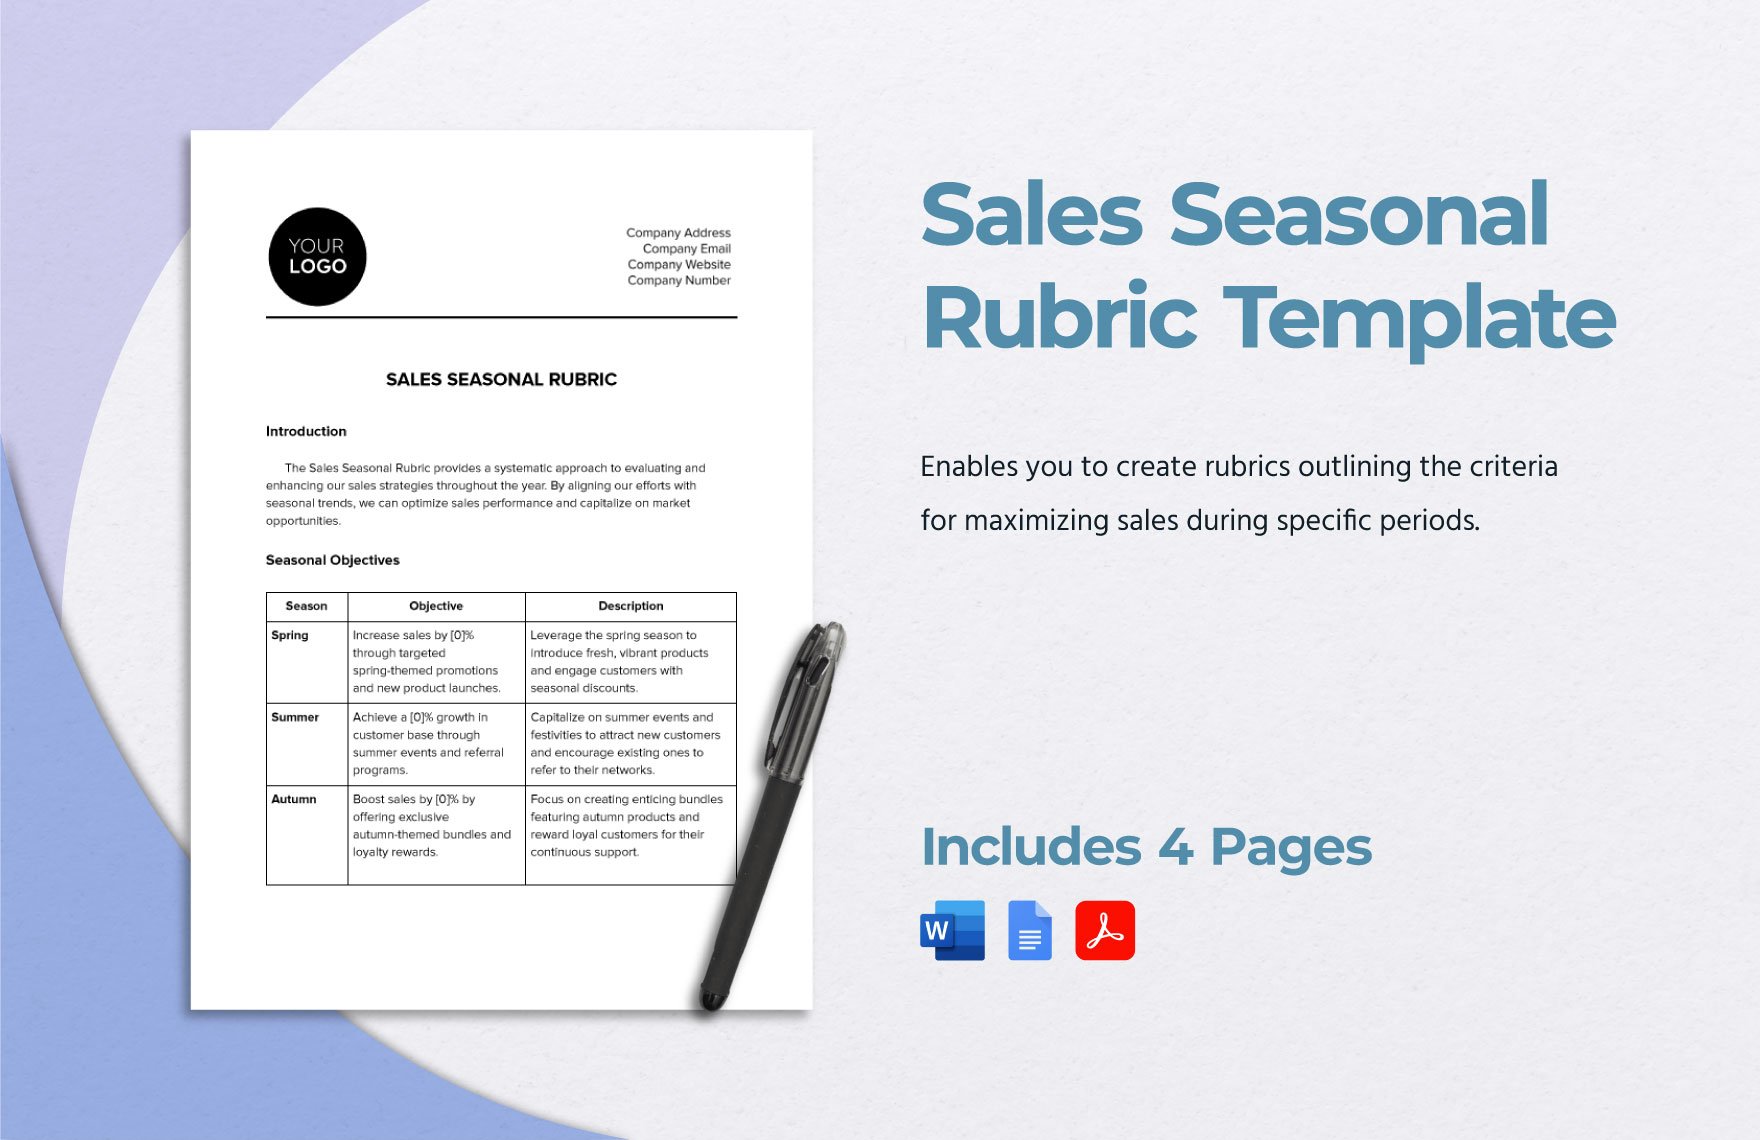 Sales Seasonal Rubric Template in Word, Google Docs, PDF